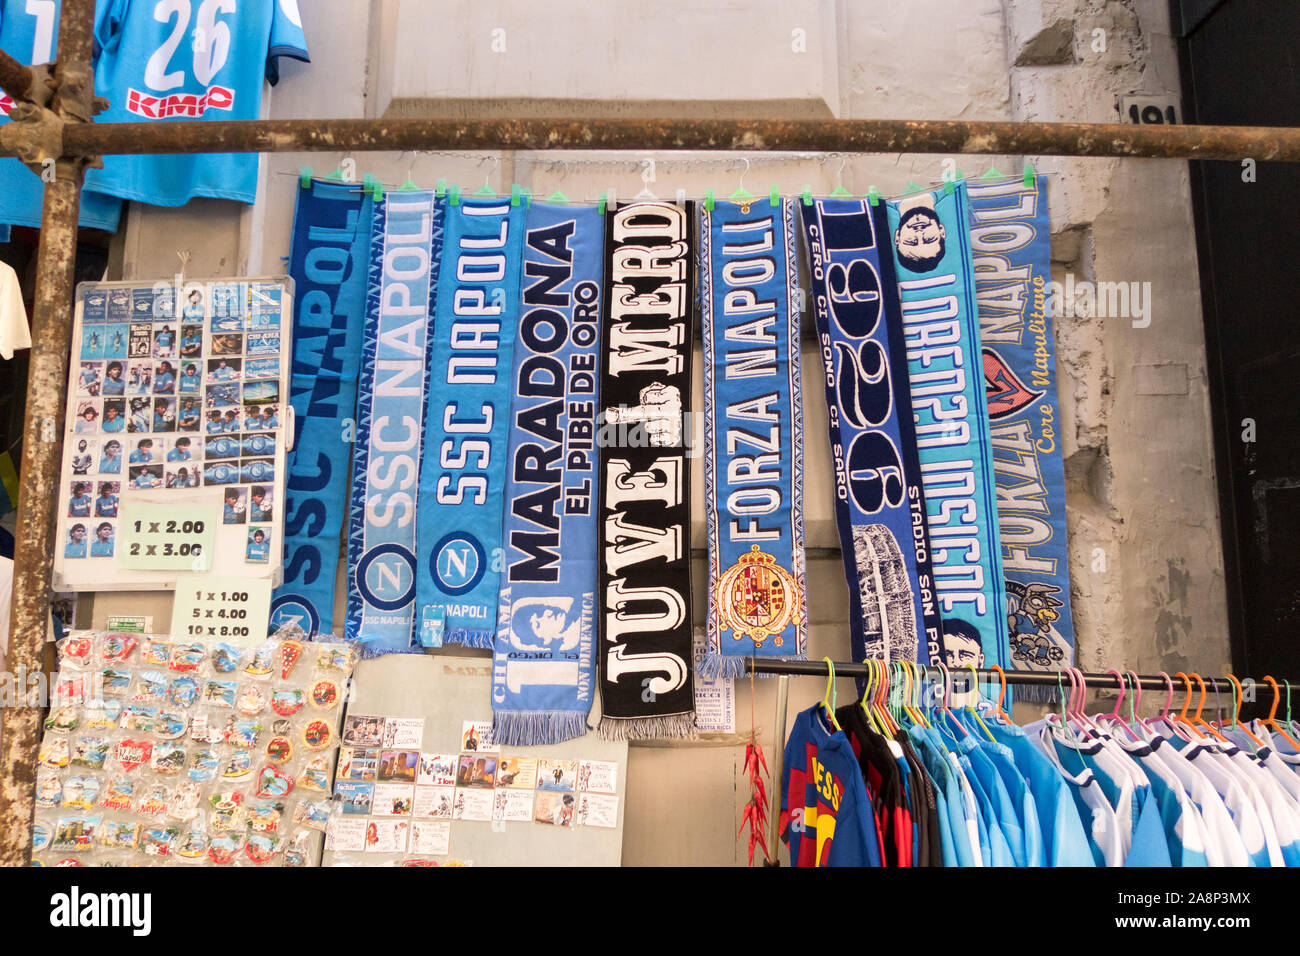 Napoli football team di sciarpe venduti nel centro della città in una fase di stallo Foto Stock